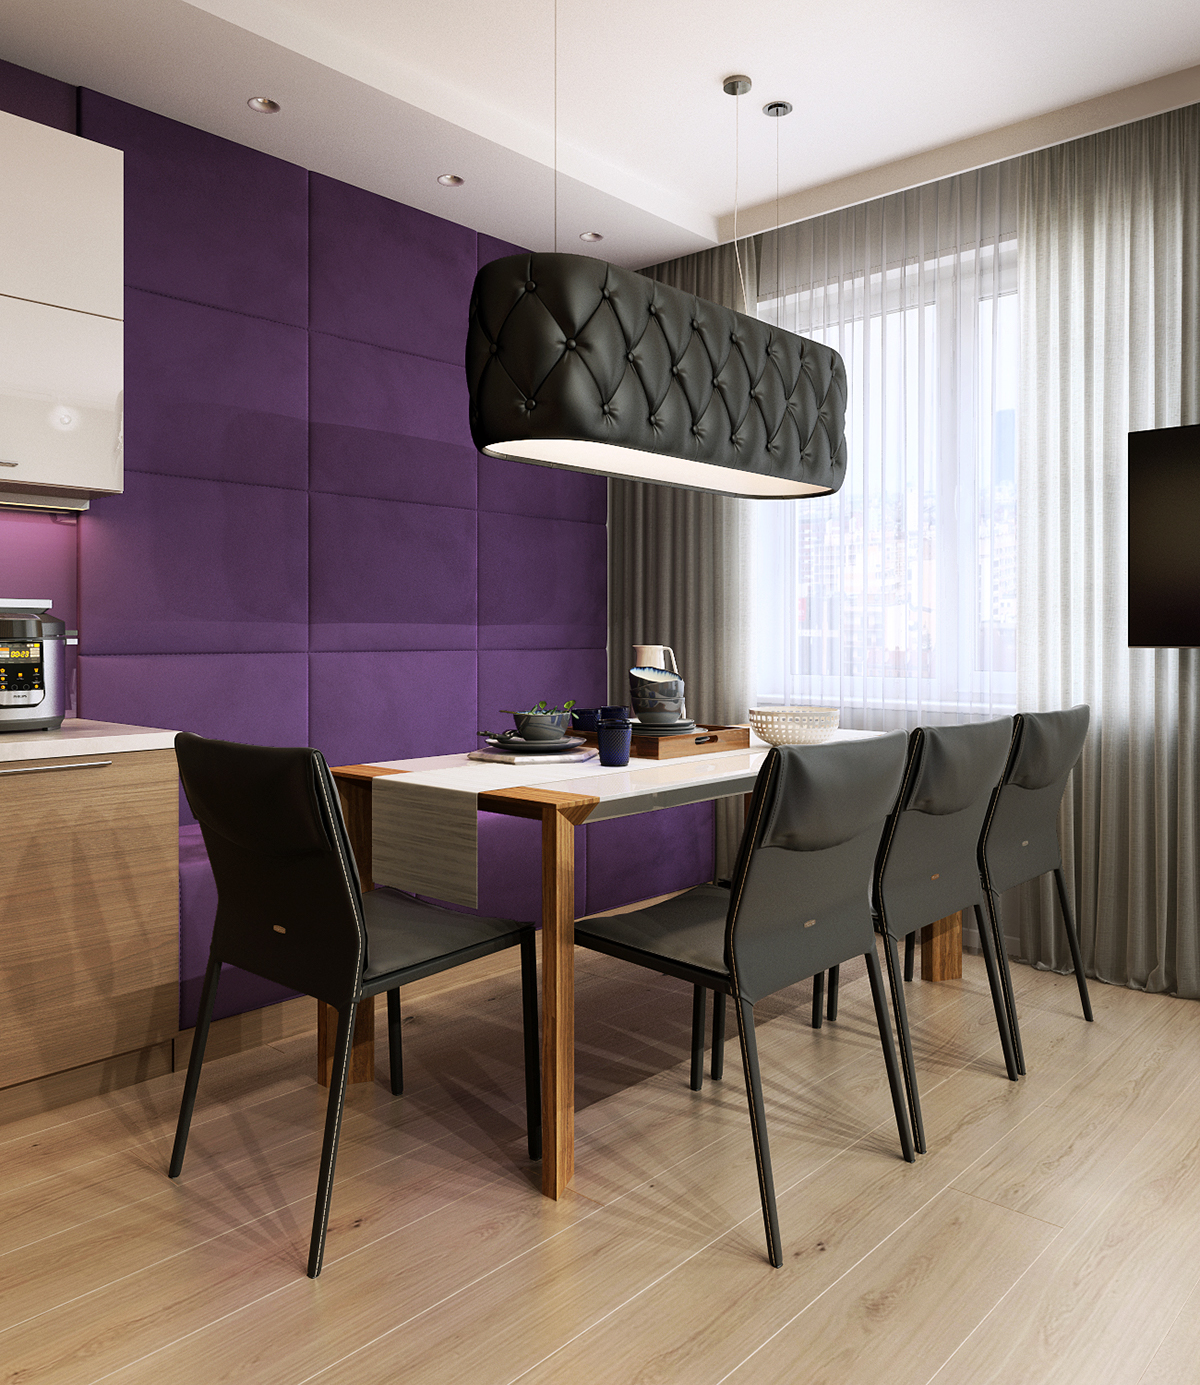 modern interior wood apartment Render viz vizualisztion 3drender